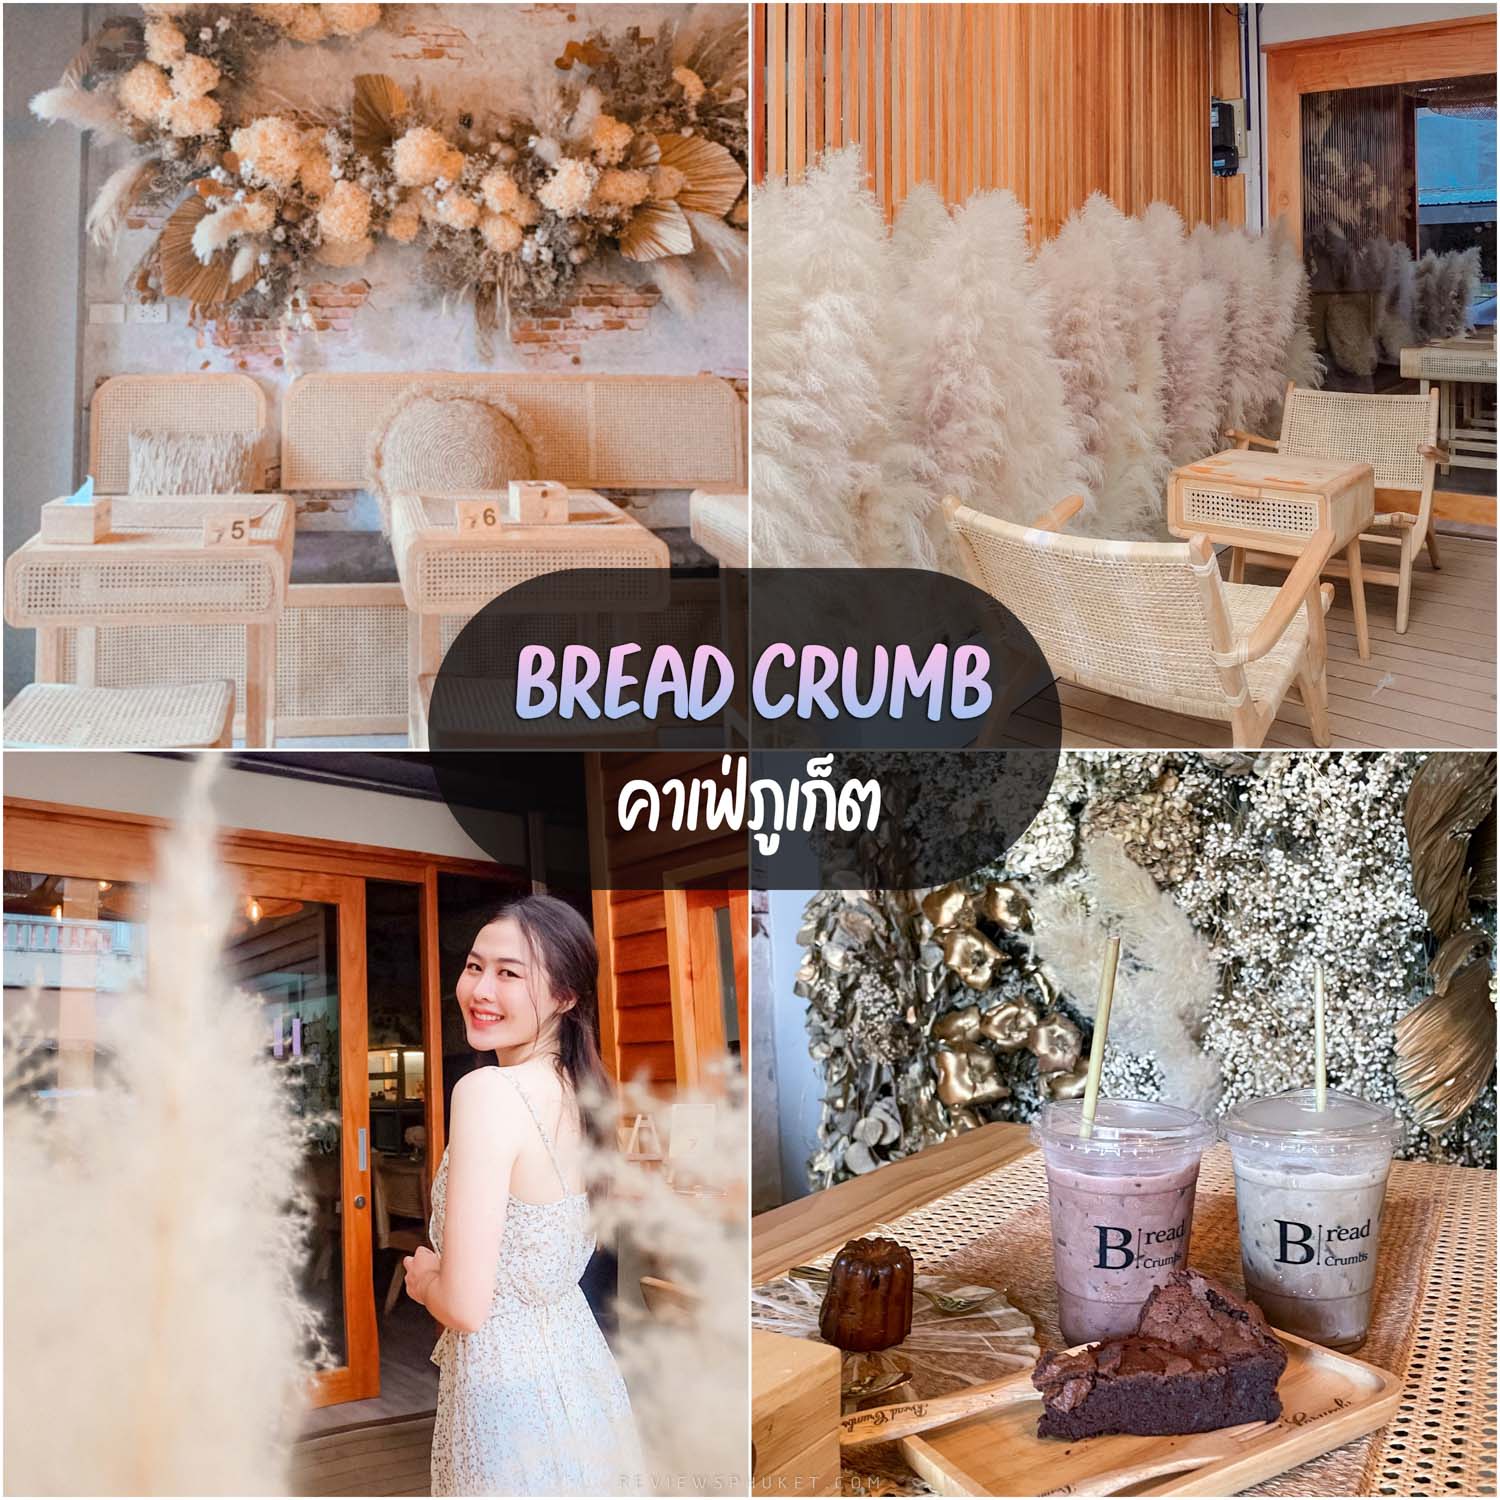 Bread crumbs Cafe 普吉岛咖啡馆，可爱的装饰，美味的烘焙饮品。